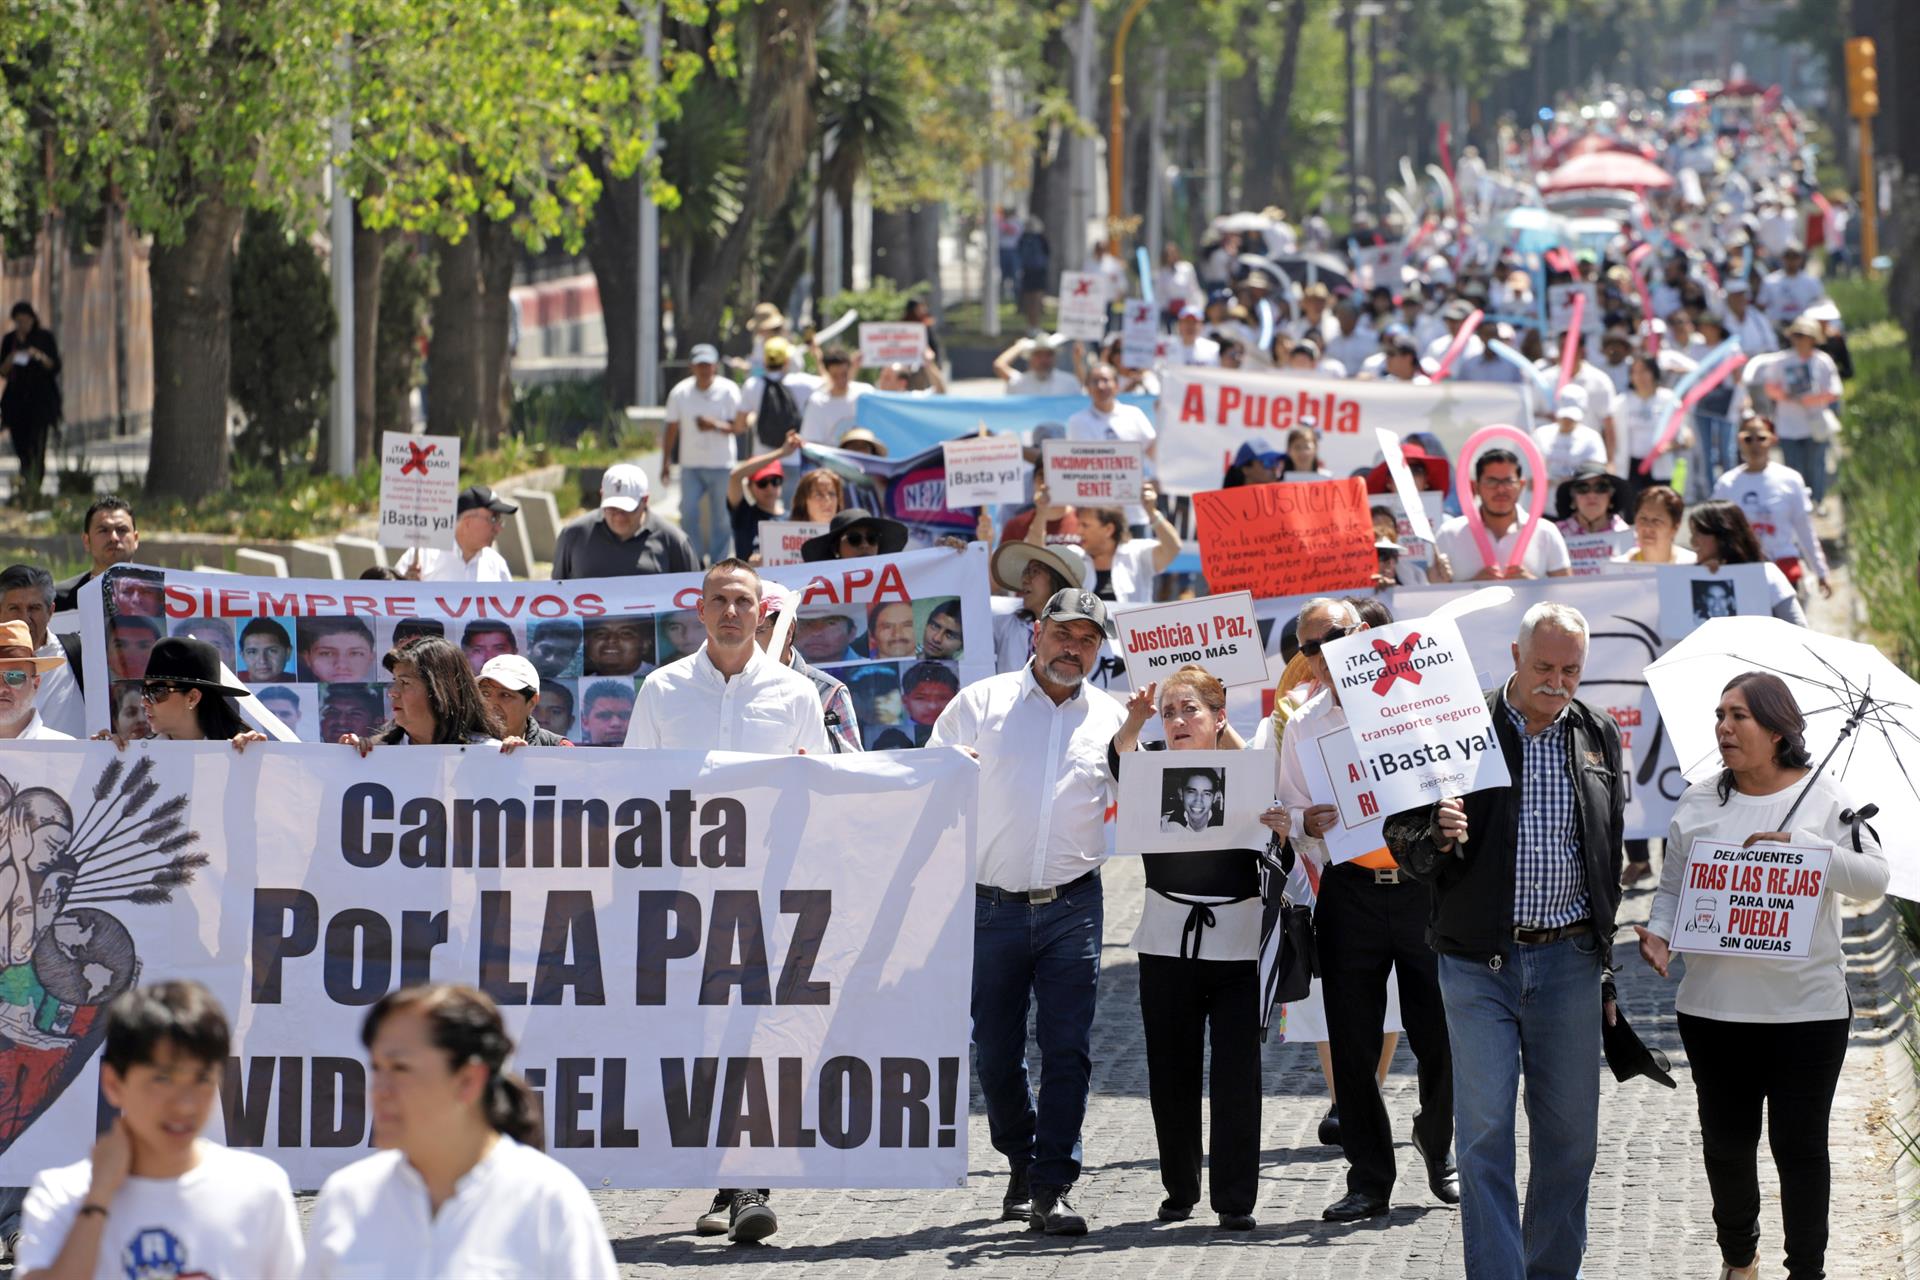 Fotografía de archivo de integrantes de la familia LeBaron que participan en una protesta, acompañados por familiares de víctimas de violencia exigiendo justicia y paz ante los niveles de inseguridad, en Puebla (México). EFE/Hilda Ríos
